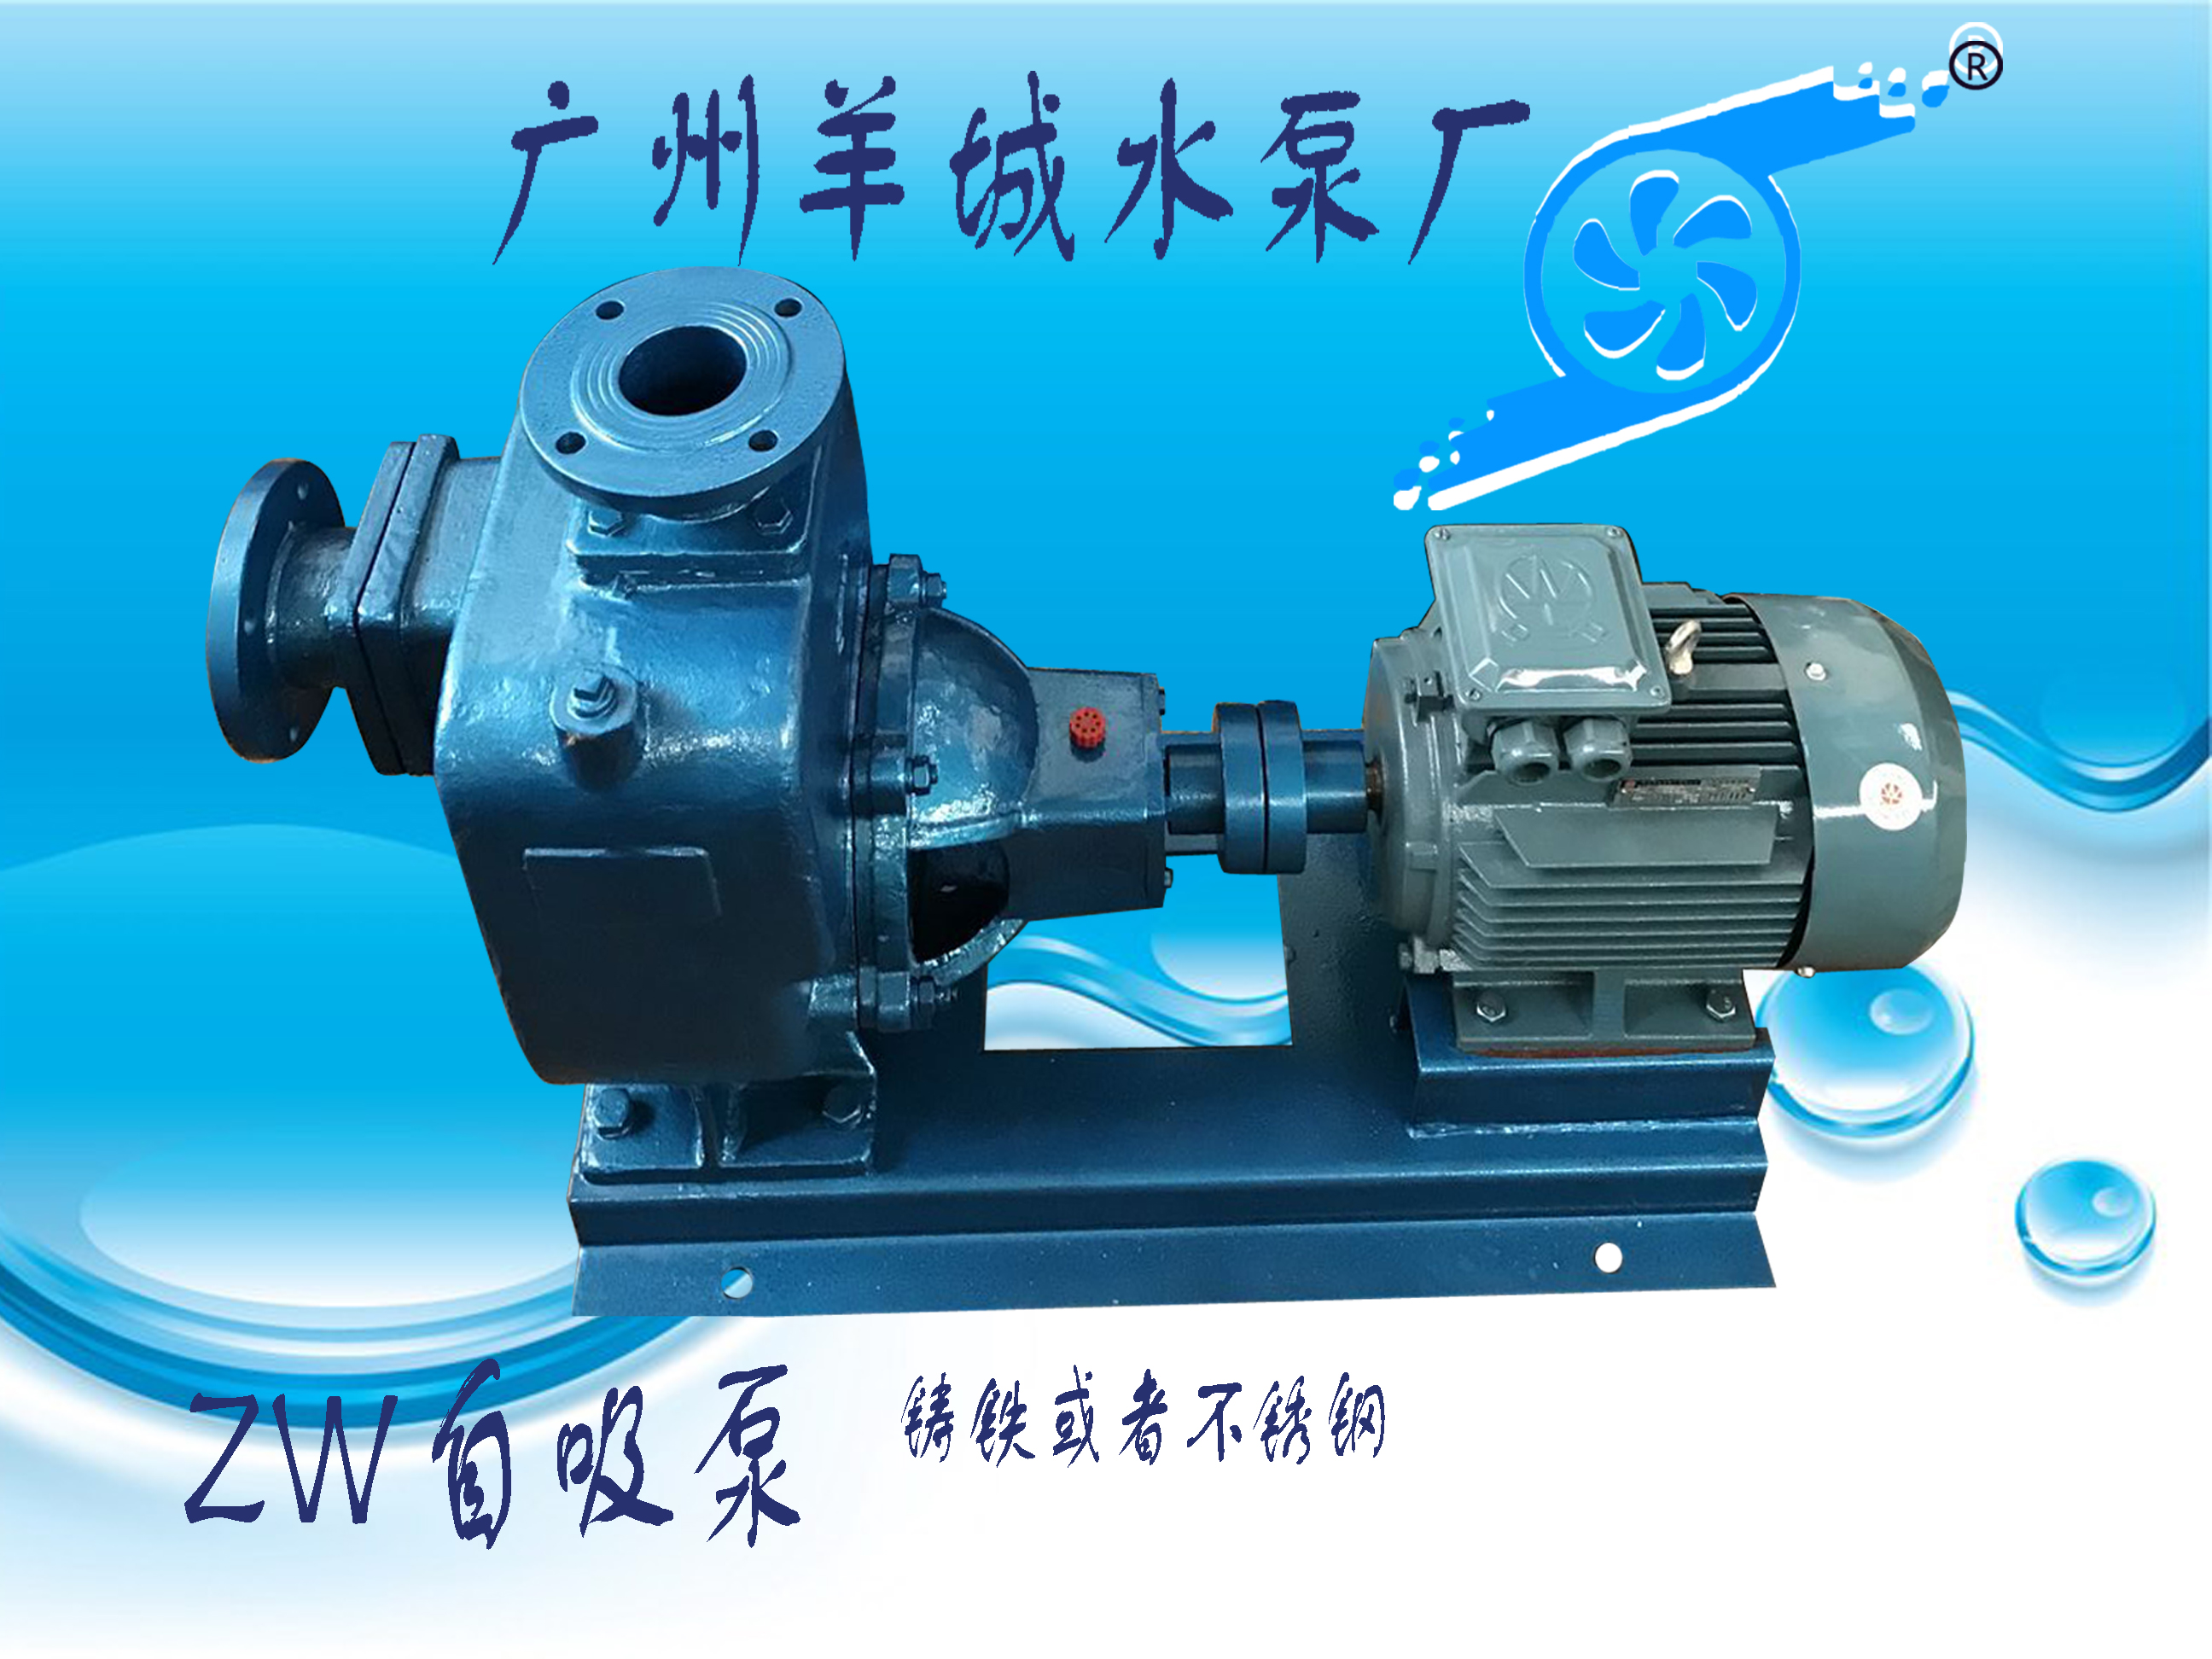 广州羊城水泵|铸铁自吸泵|ZW80-40-16|羊城泵业|东莞水泵厂